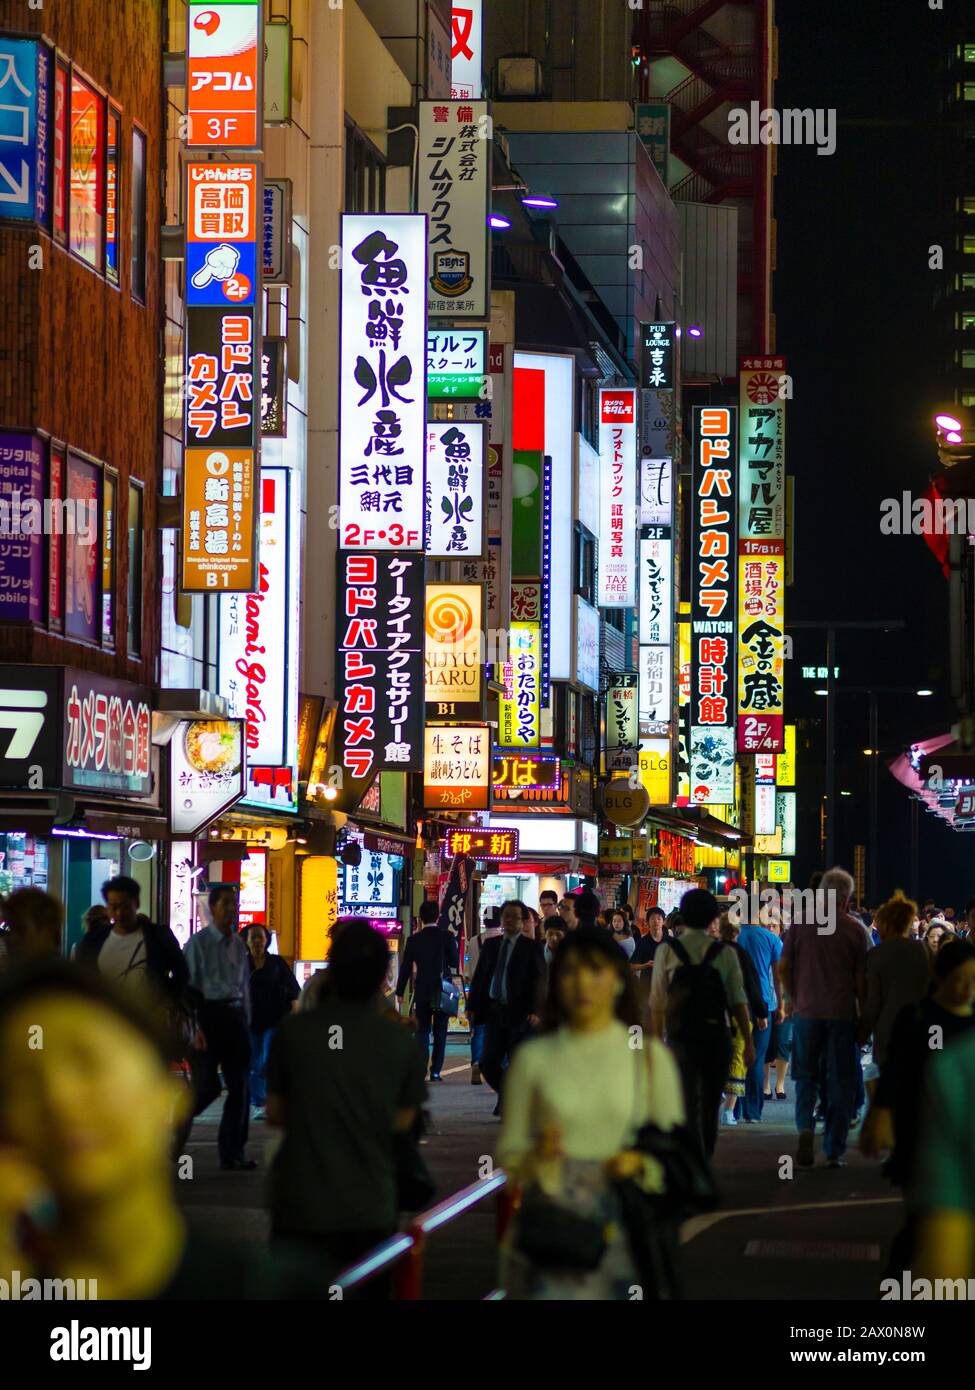 Tokio, Japan - 9. Oktober 2018: Abends sind die Straßen des beleuchteten Tokioter Gewerbeviertels Shinjuku voller Menschen. Stockfoto